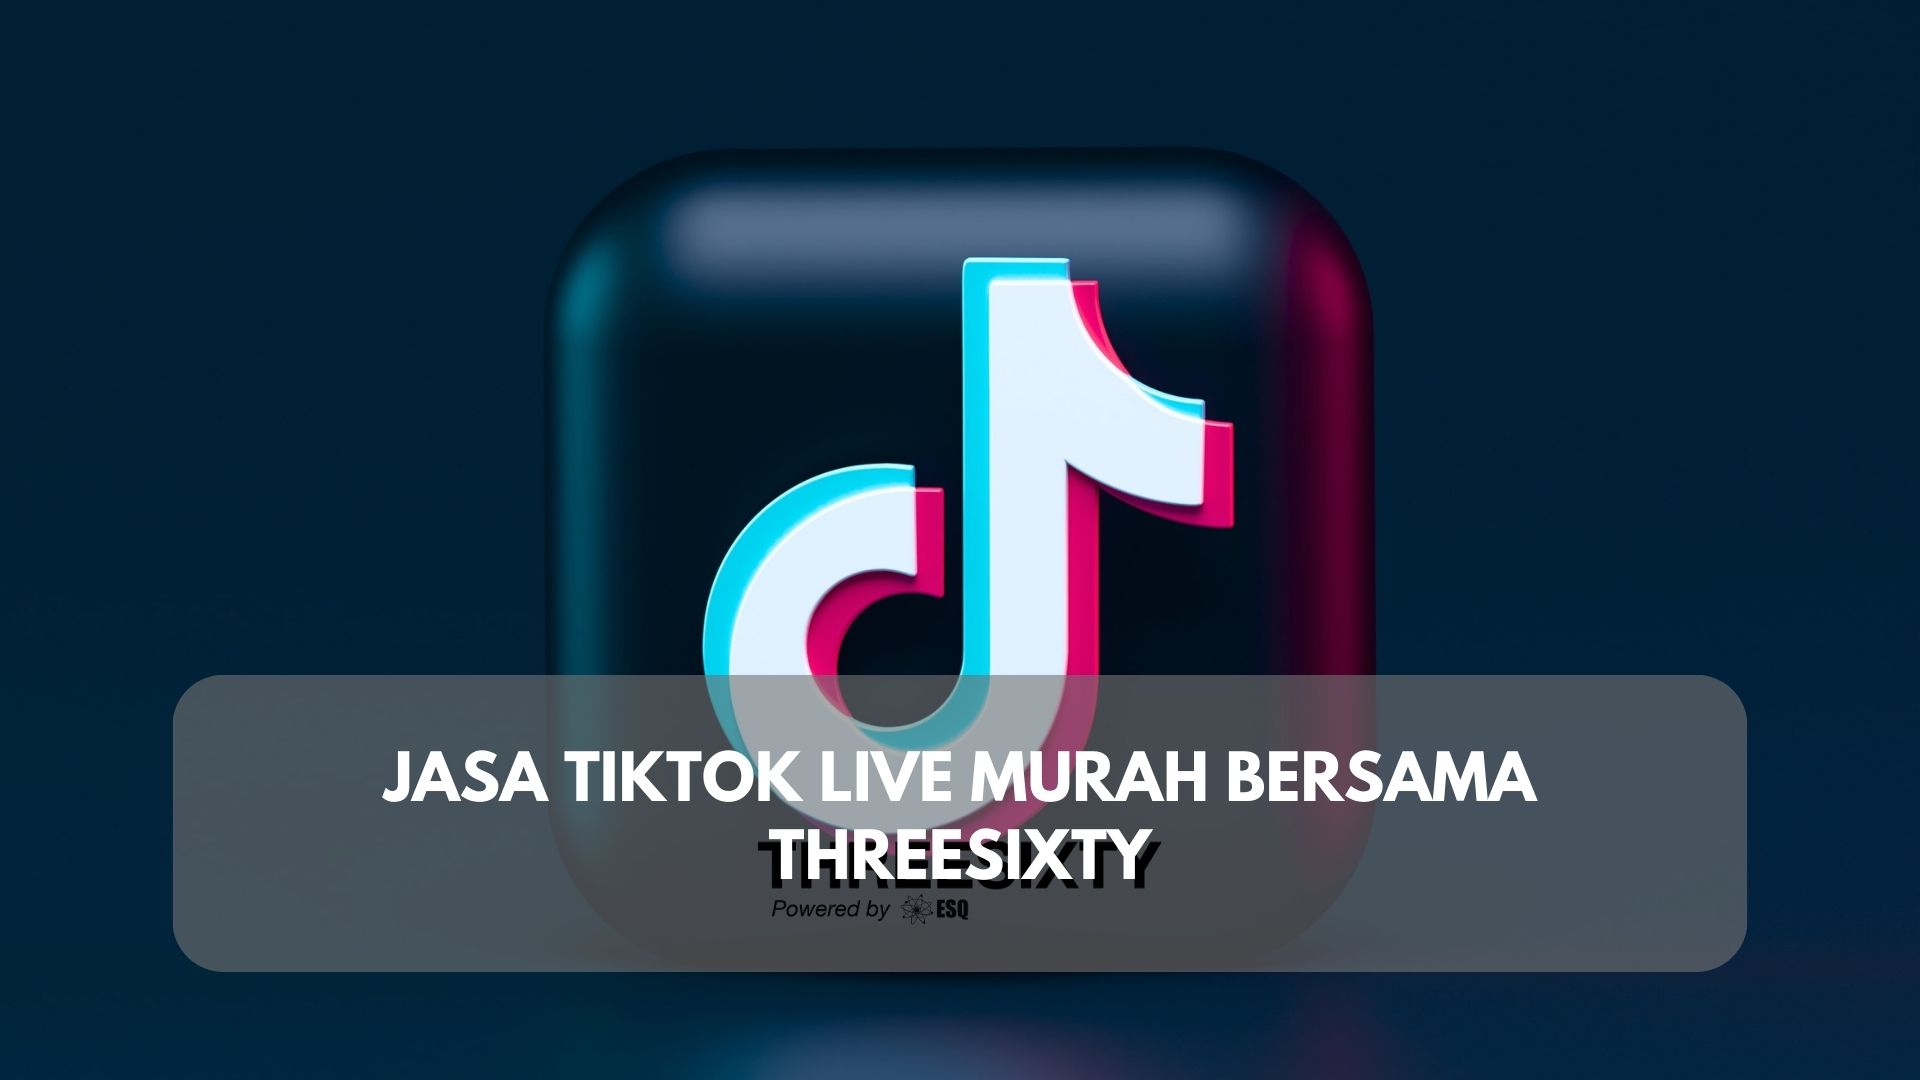 Jasa TikTok Live Murah Bersama Threesixty